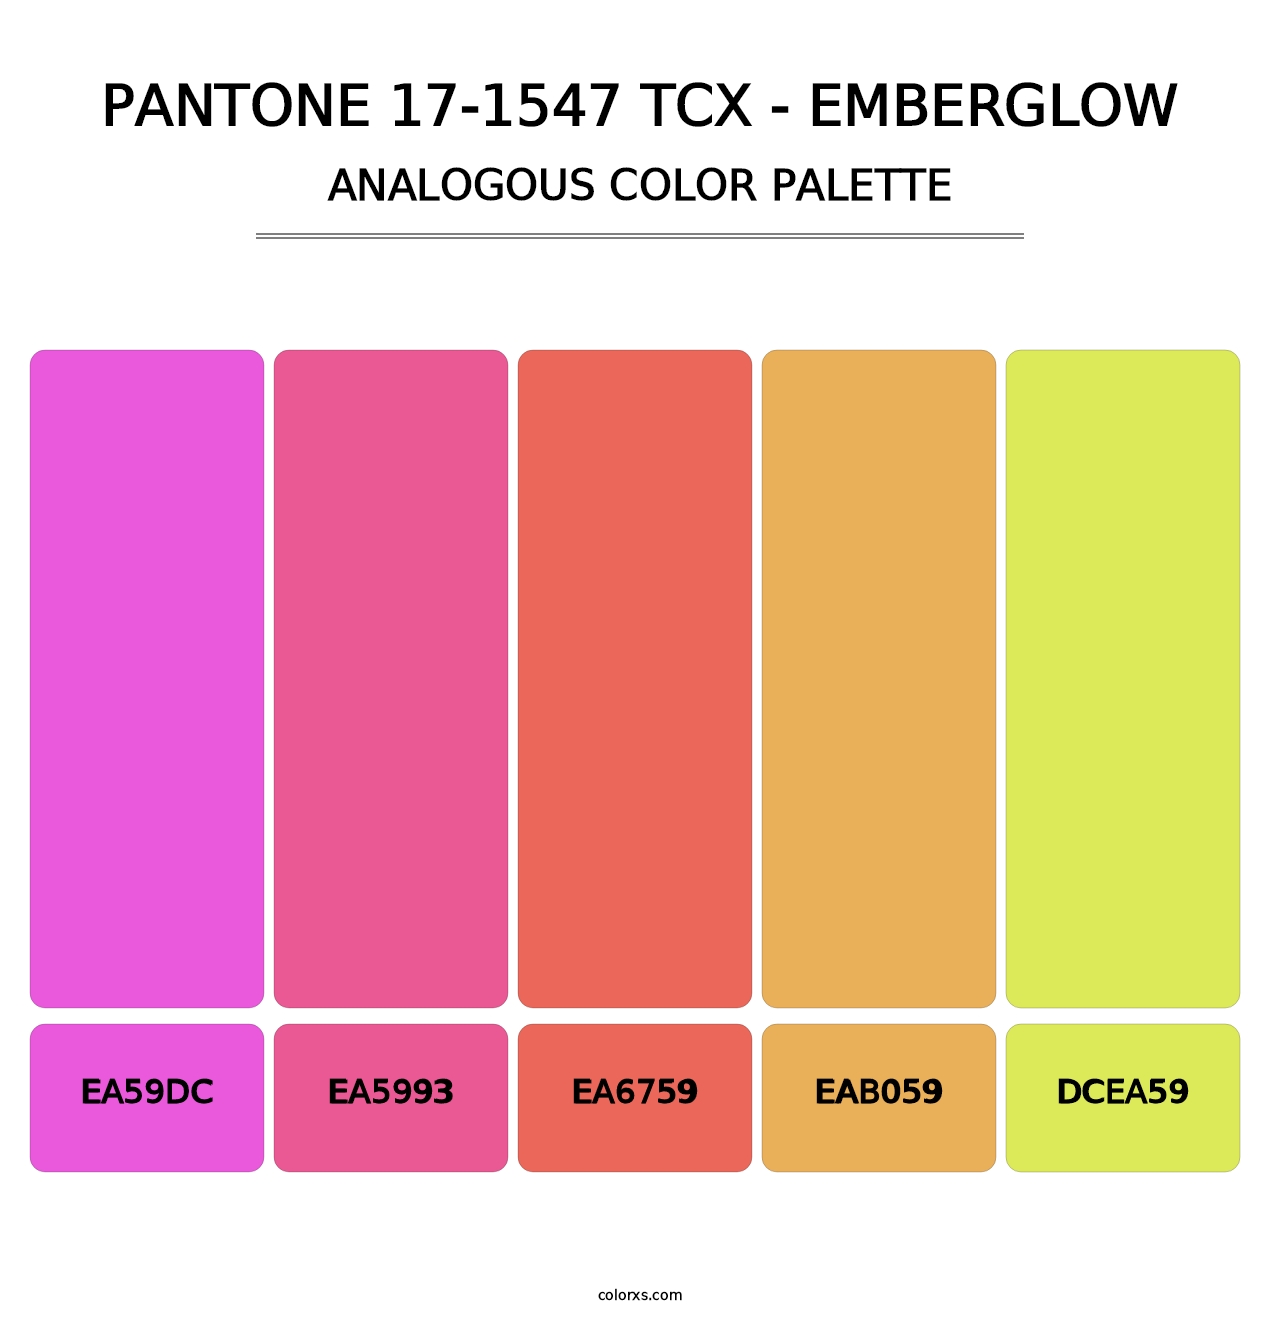 PANTONE 17-1547 TCX - Emberglow - Analogous Color Palette